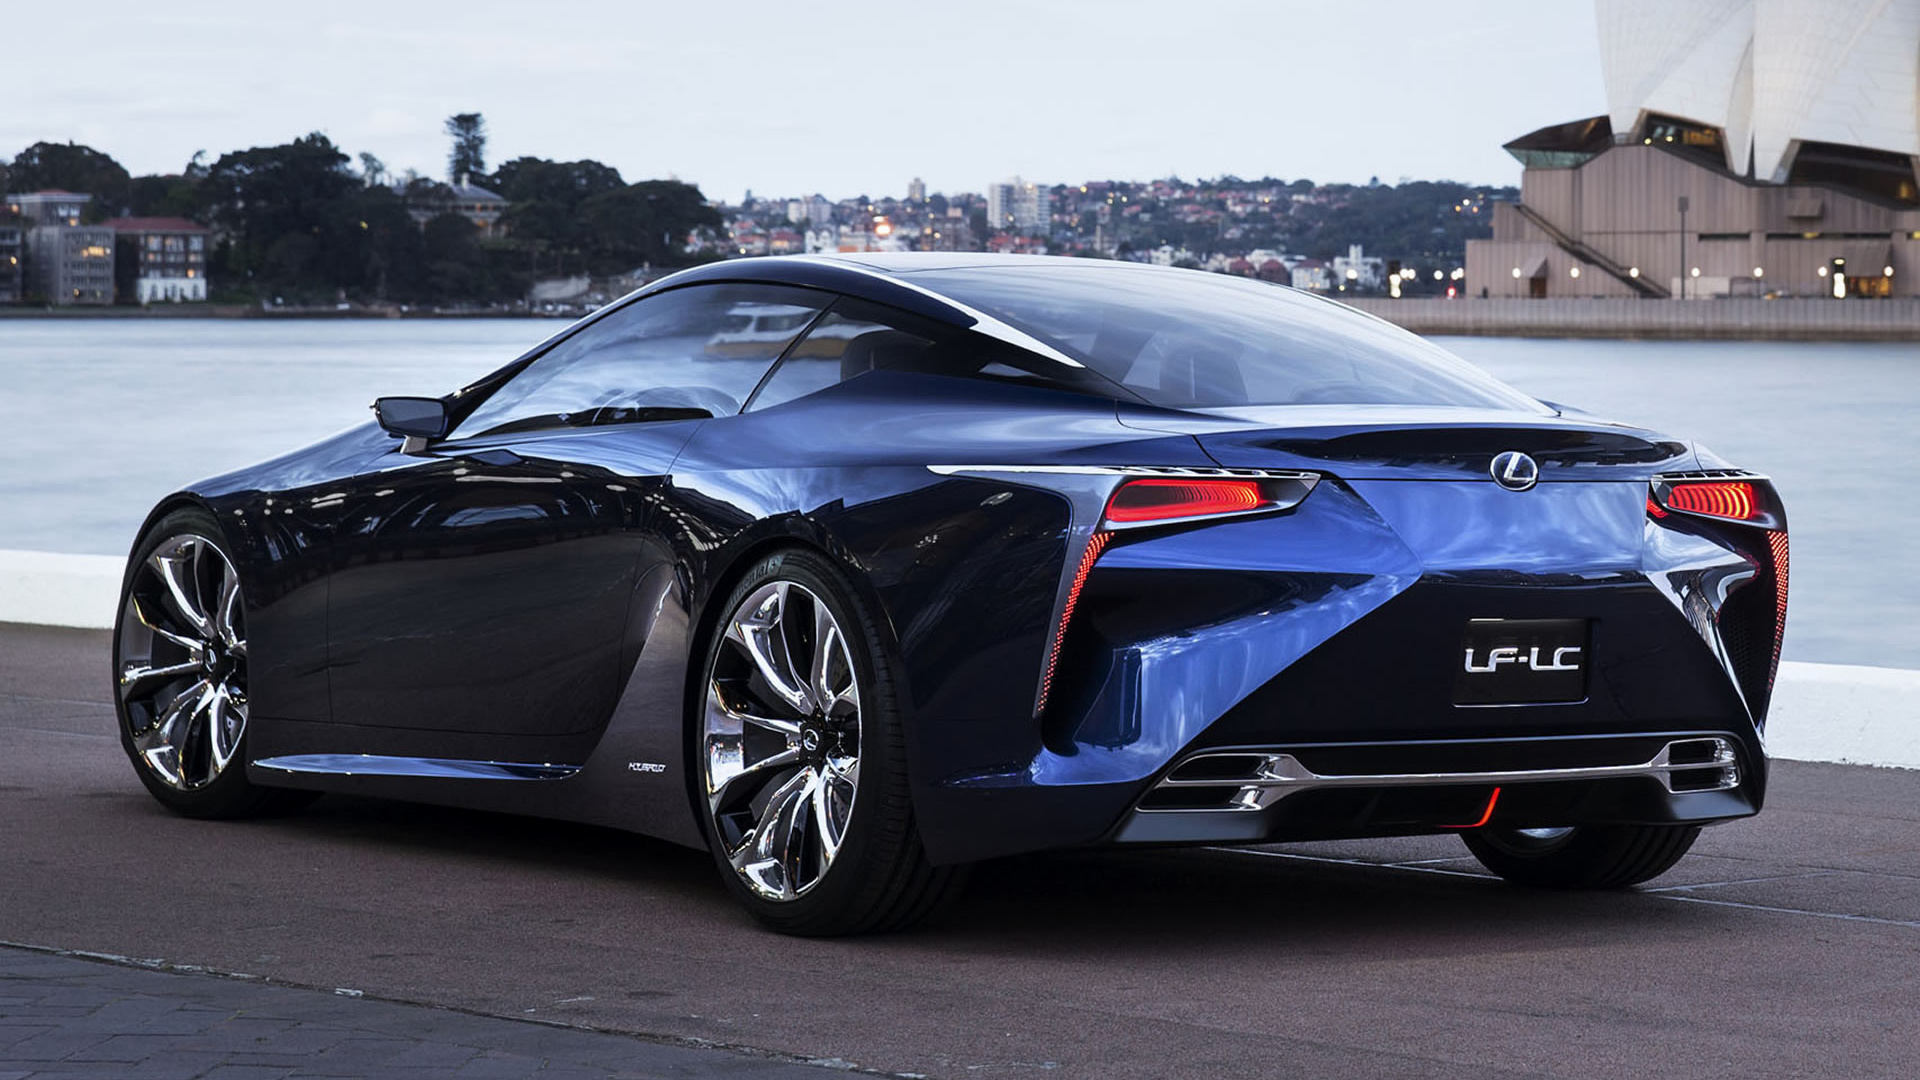 2012 Lexus LF LC Blue Concept